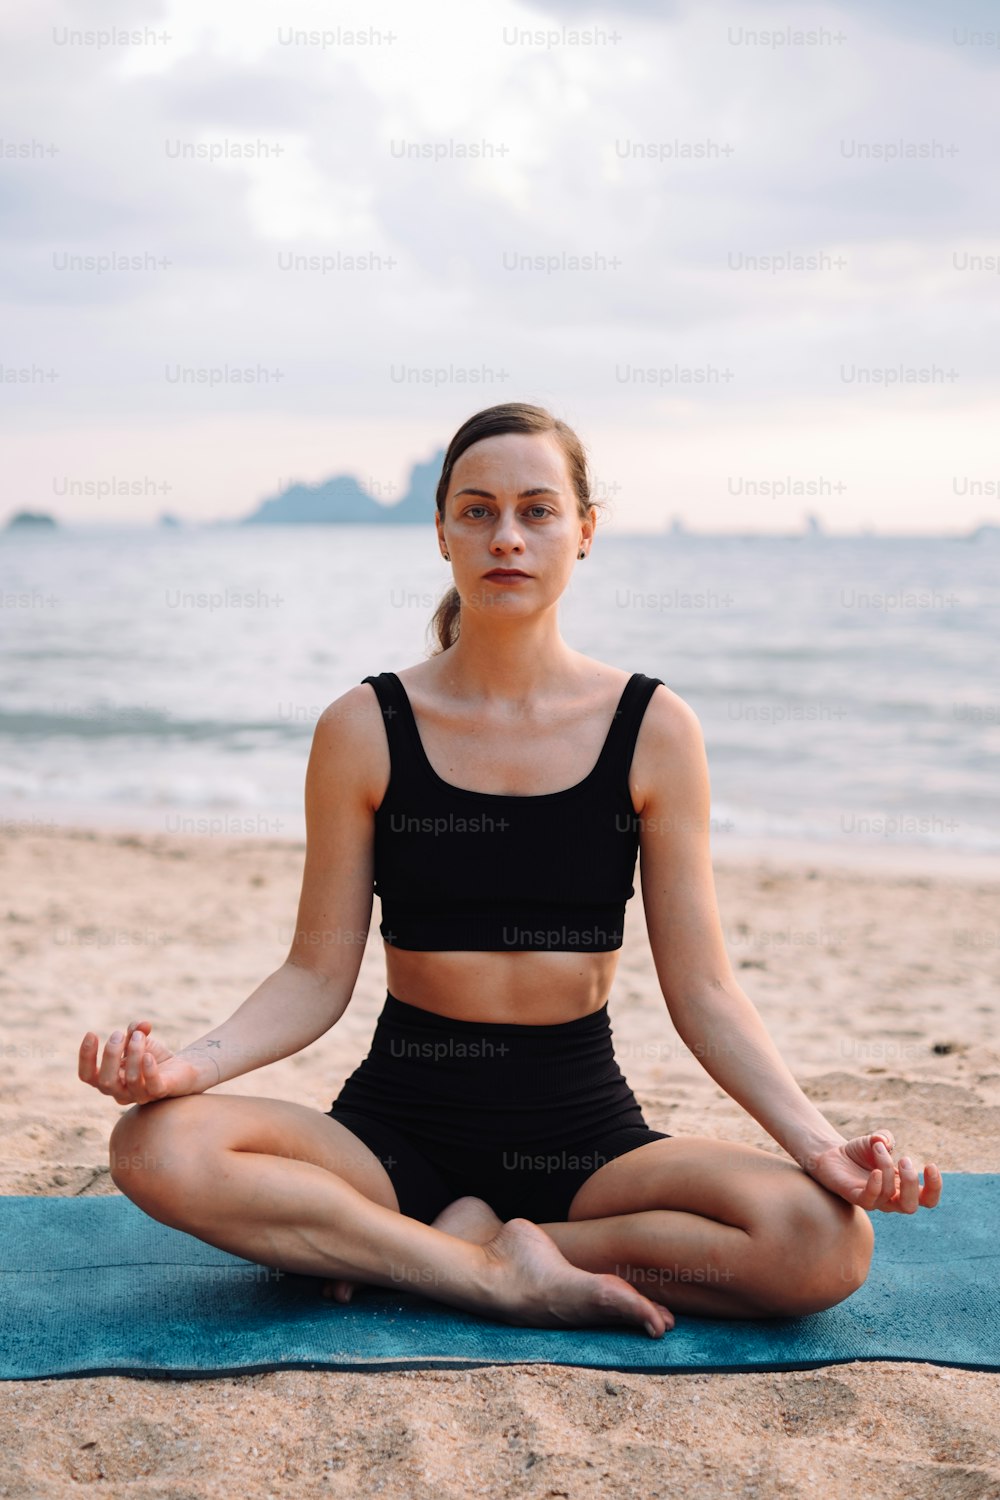 Eine Frau sitzt in einer Yoga-Position am Strand